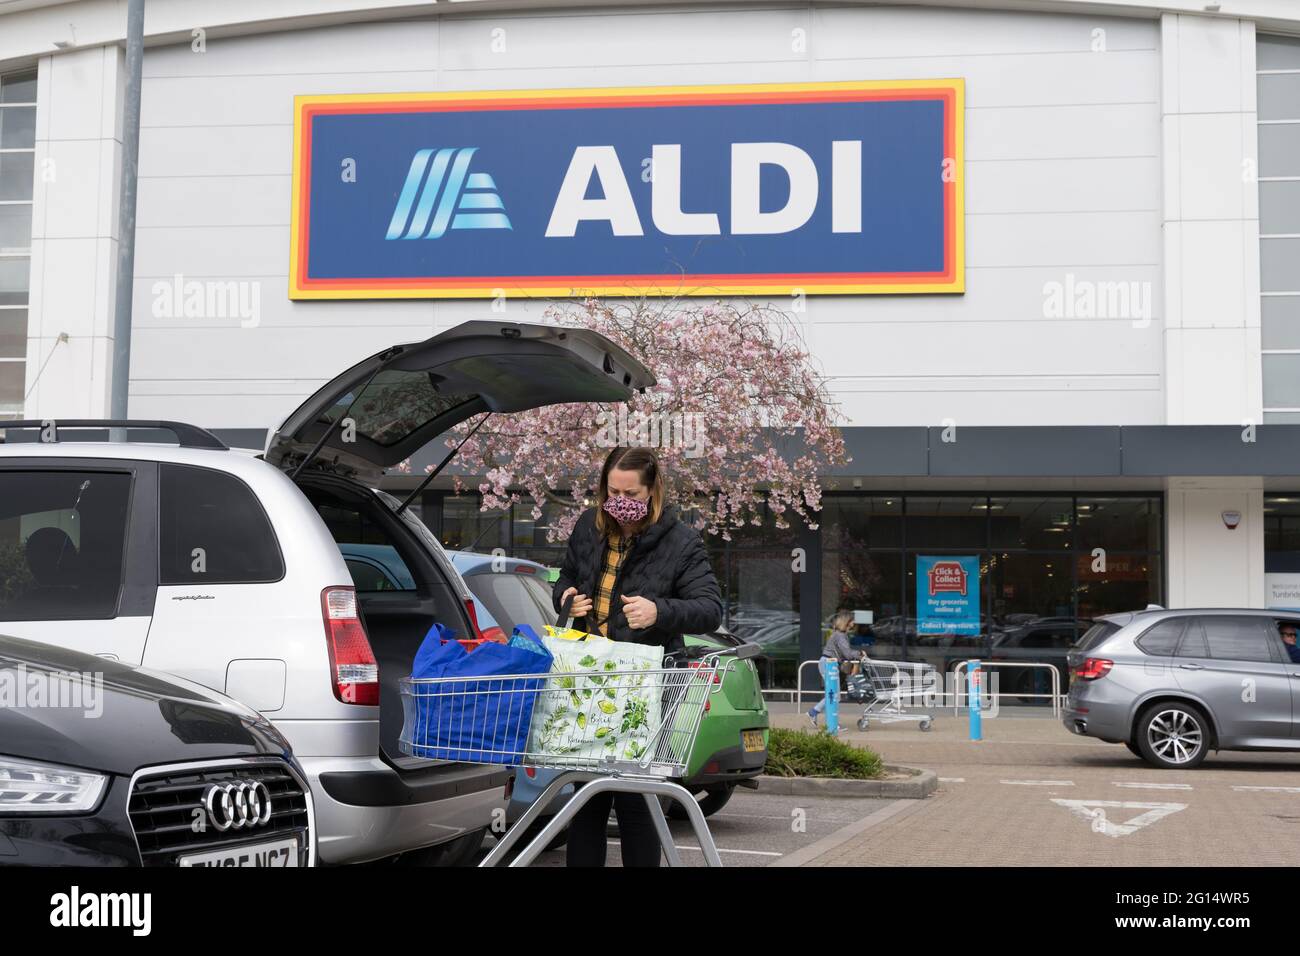 Une femme magasinant dans son coffre à l'extérieur du magasin Aldi, chaîne de supermarchés, Kent, Angleterre, Cherry Blossom à l'entrée du magasin Banque D'Images